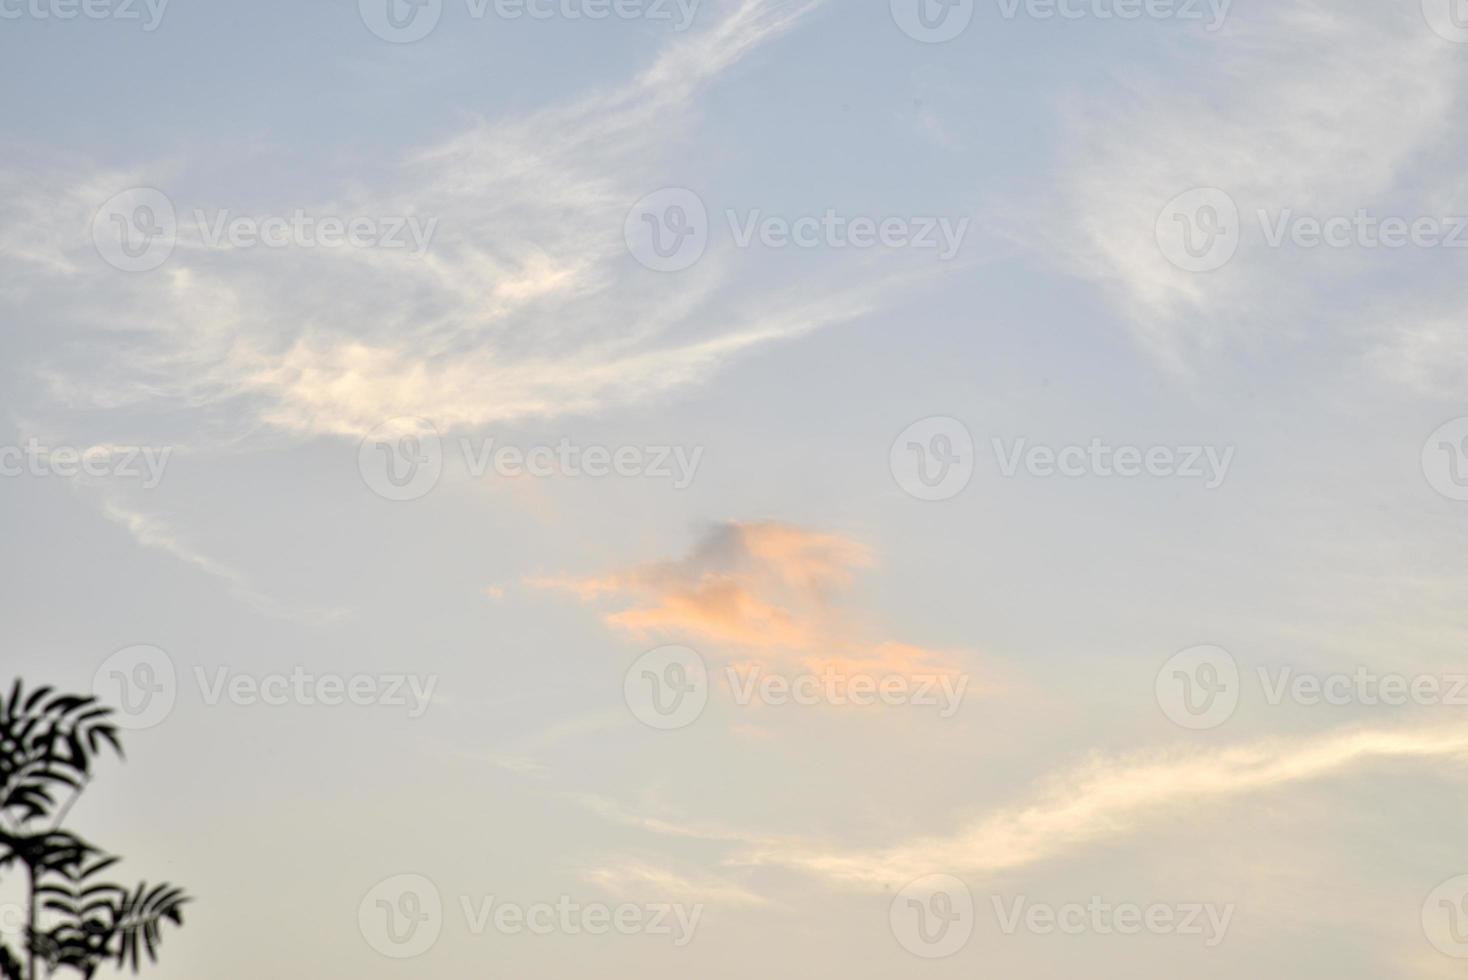 schöner sonnenuntergangshimmel mit zarten rosa wolken. sommerliche Sonnenuntergangslandschaft. foto